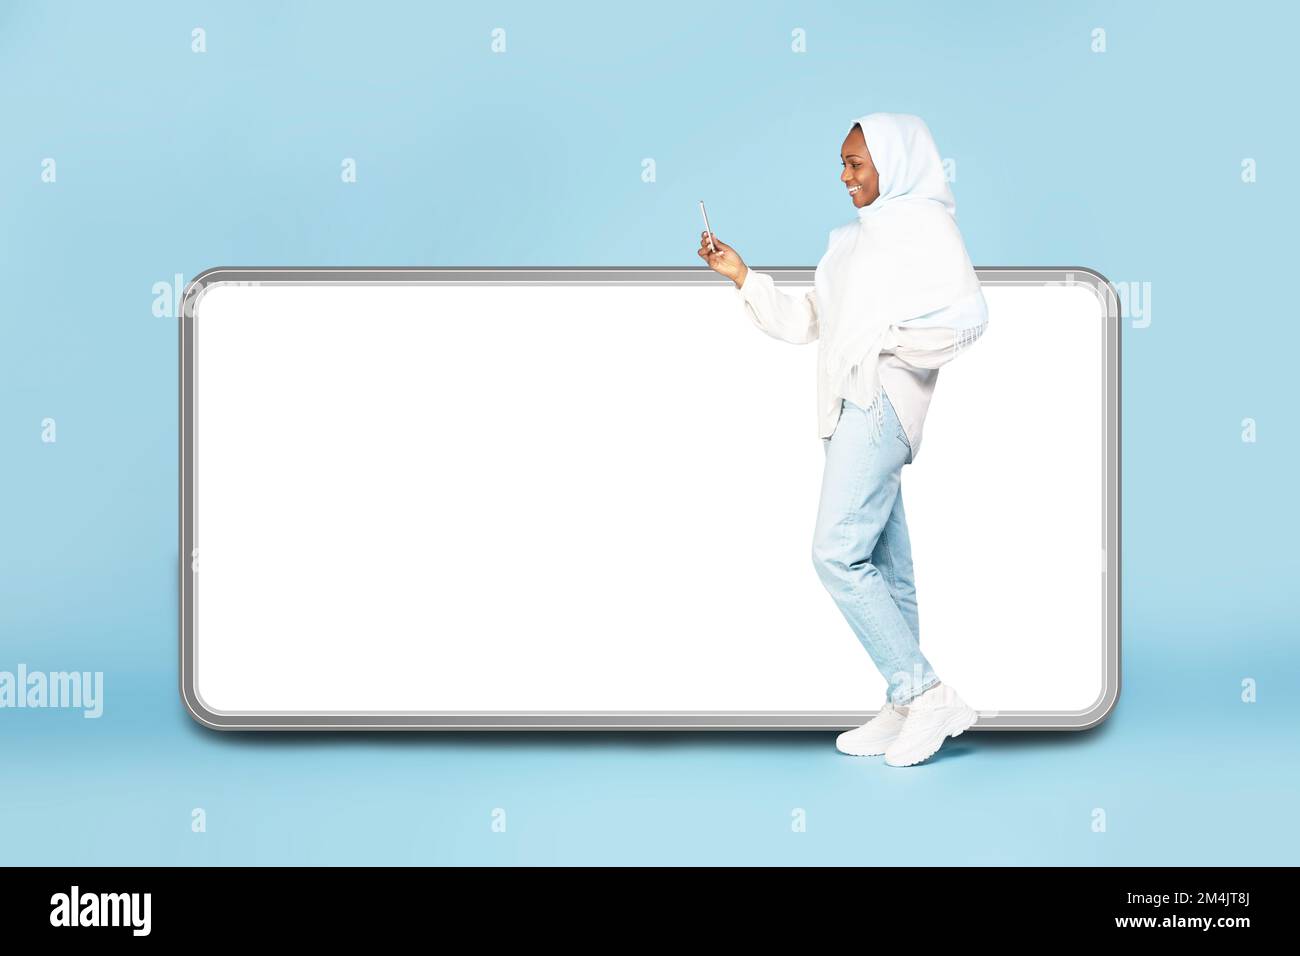 Femme noire excitée dans hijab debout près de grand téléphone portable avec écran vide et en utilisant un appareil mobile, maquette pour la publicité Banque D'Images